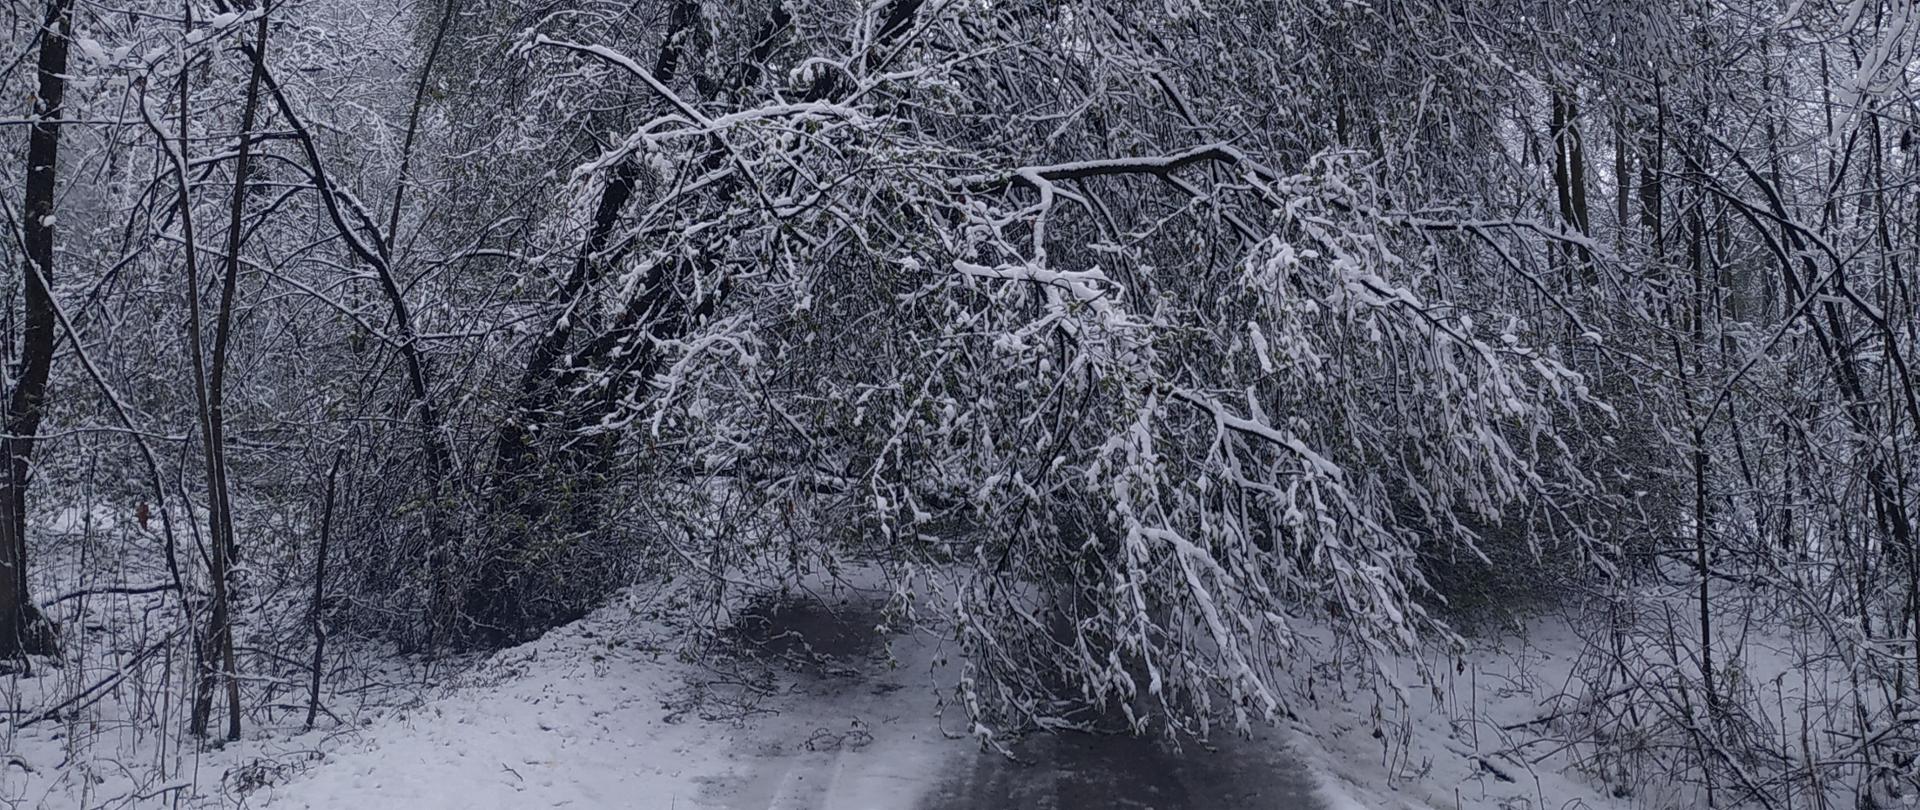 pochylone drzewo pod naporem śniegu nad drogą